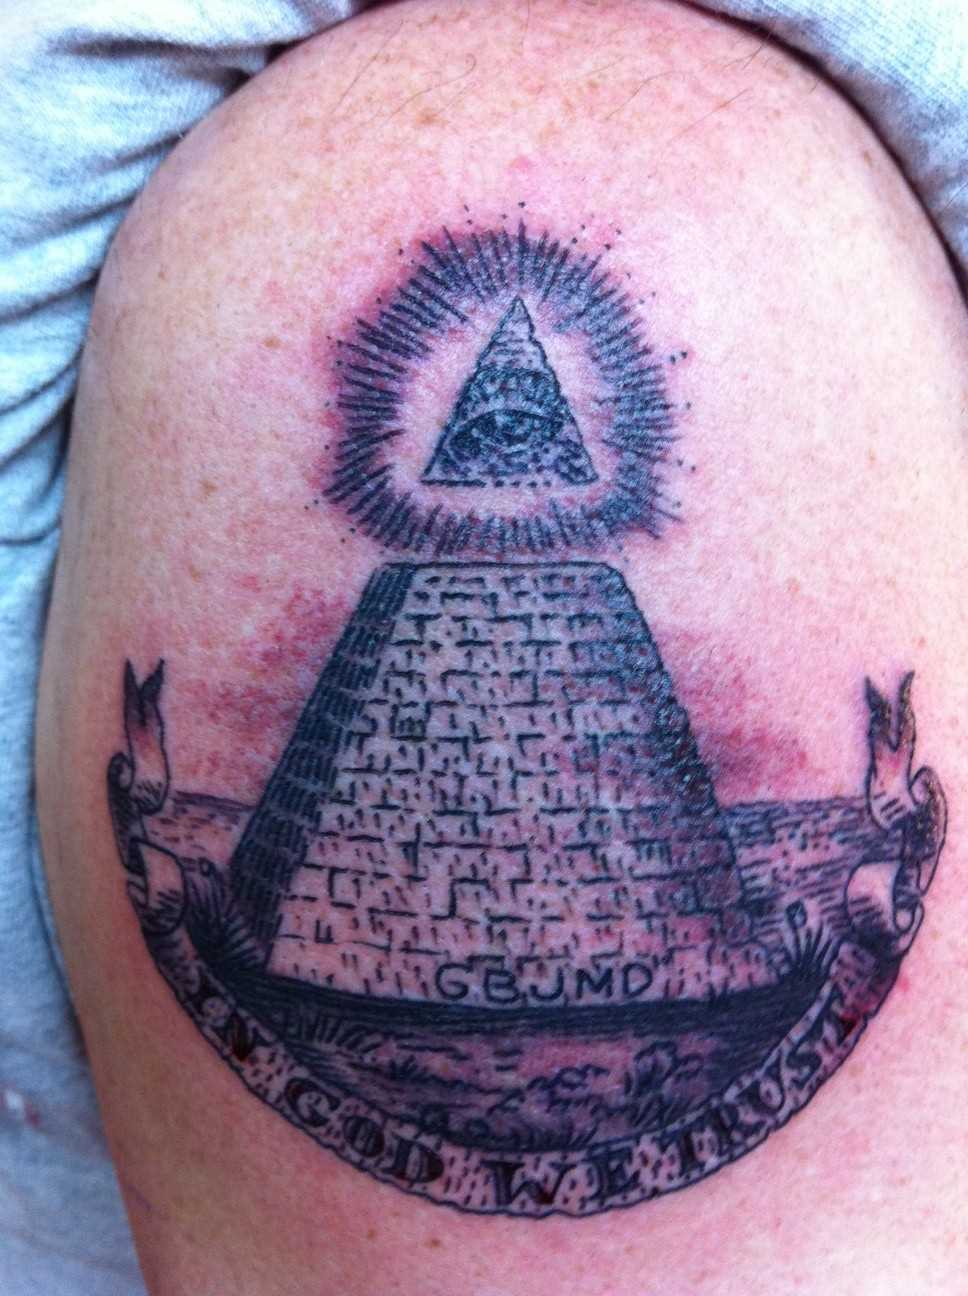 Tatuagem no ombro de um cara - a pirâmide com o olho